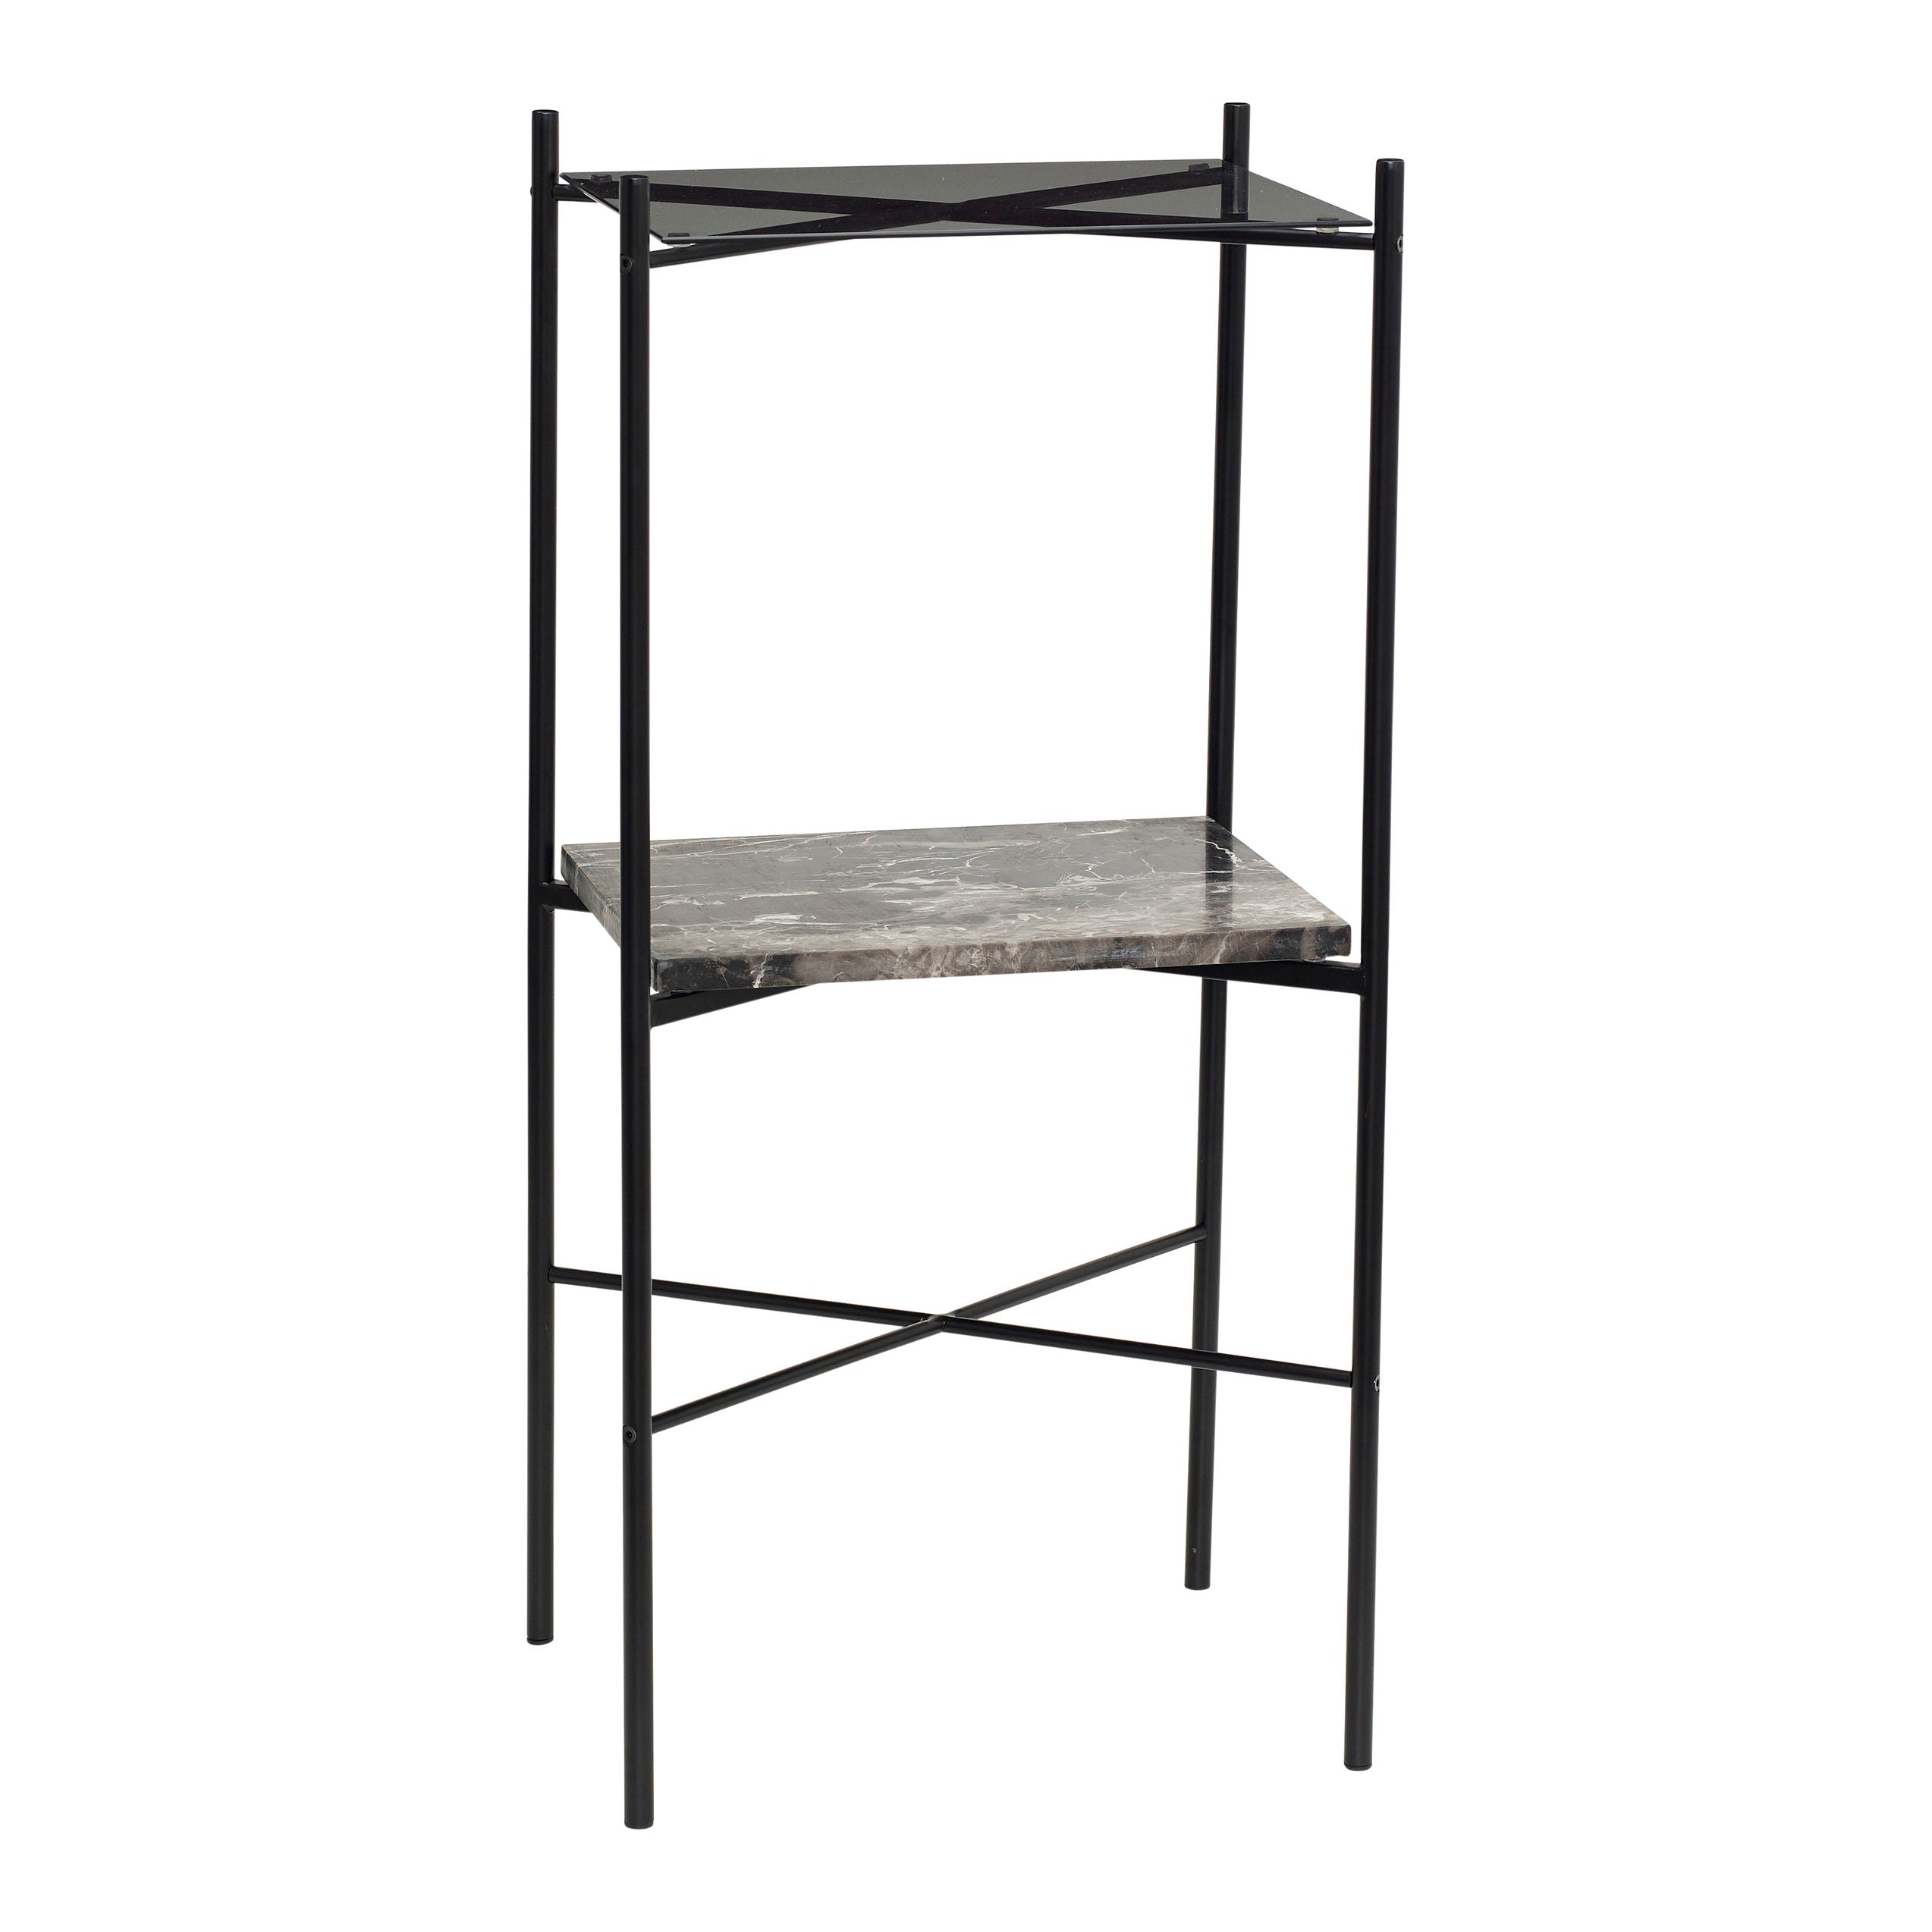 Der Konsolentisch 'Niche' in Schwarz vereint Glas, Marmor und Metall zu einem stilvollen Möbelstück mit zwei praktischen Flächen für die Aufbewahrung Ihrer Lieblingsdekorationen